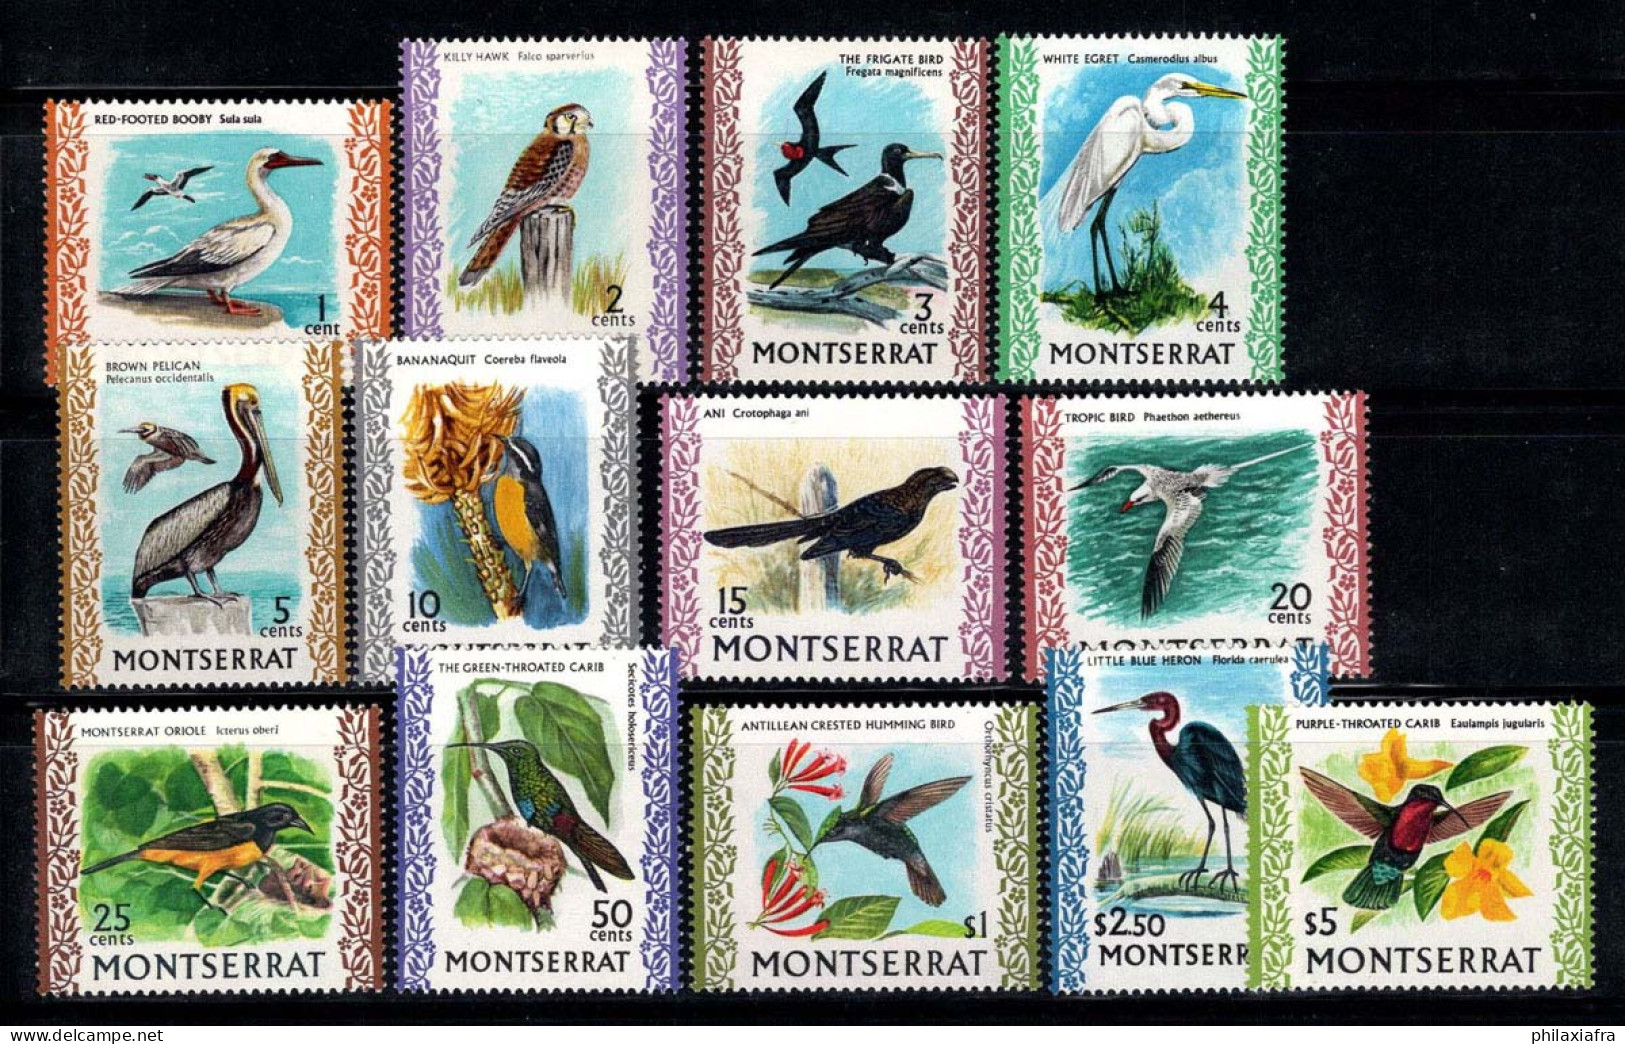 Montserrat 1970 Mi. 230-242 Neuf ** 100% Oiseaux - Montserrat